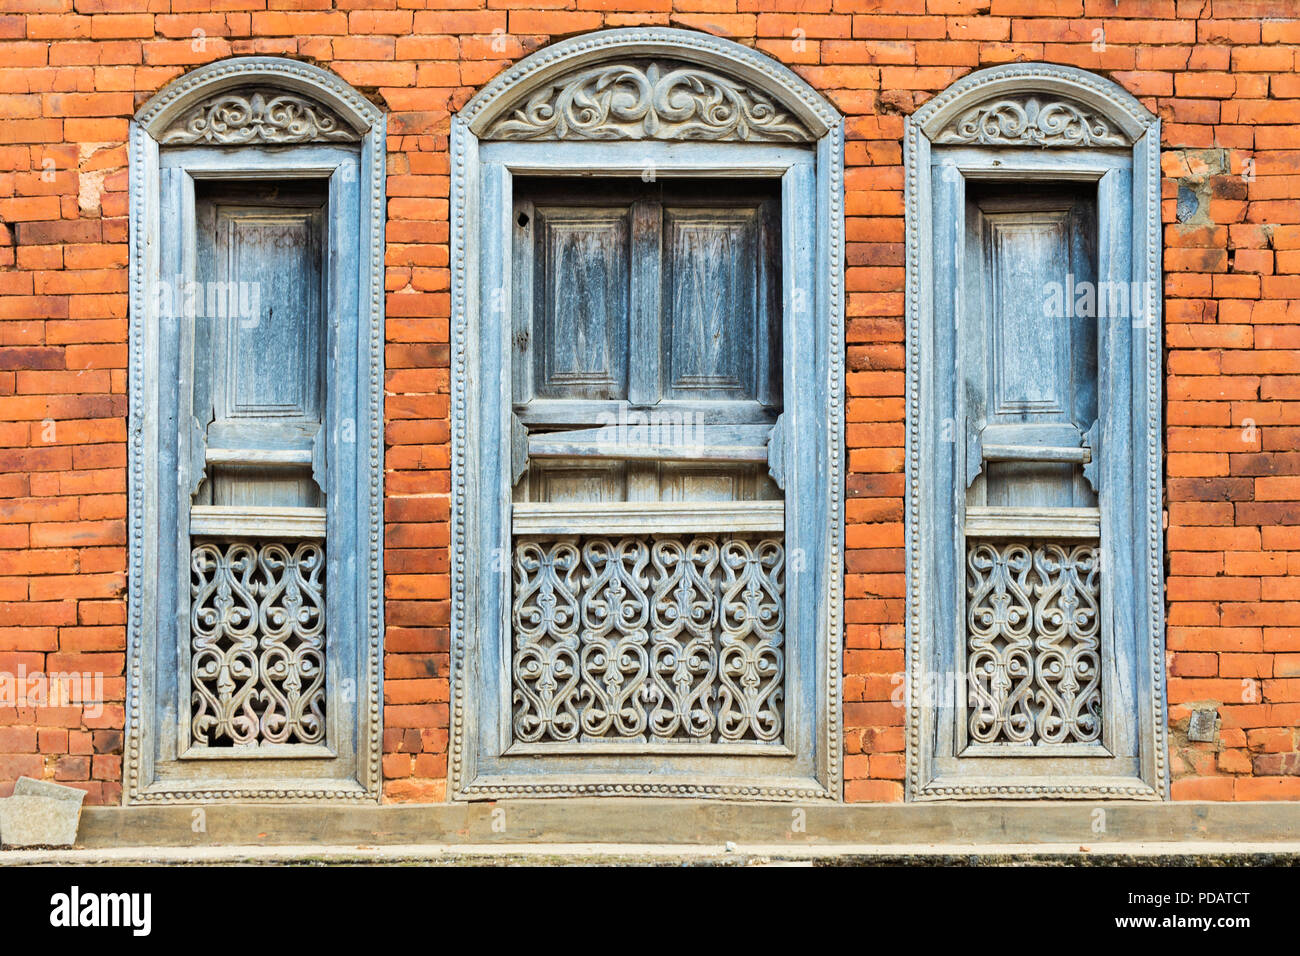 In legno colorato, windows Bandipur, Tanahun district, Nepal Foto Stock